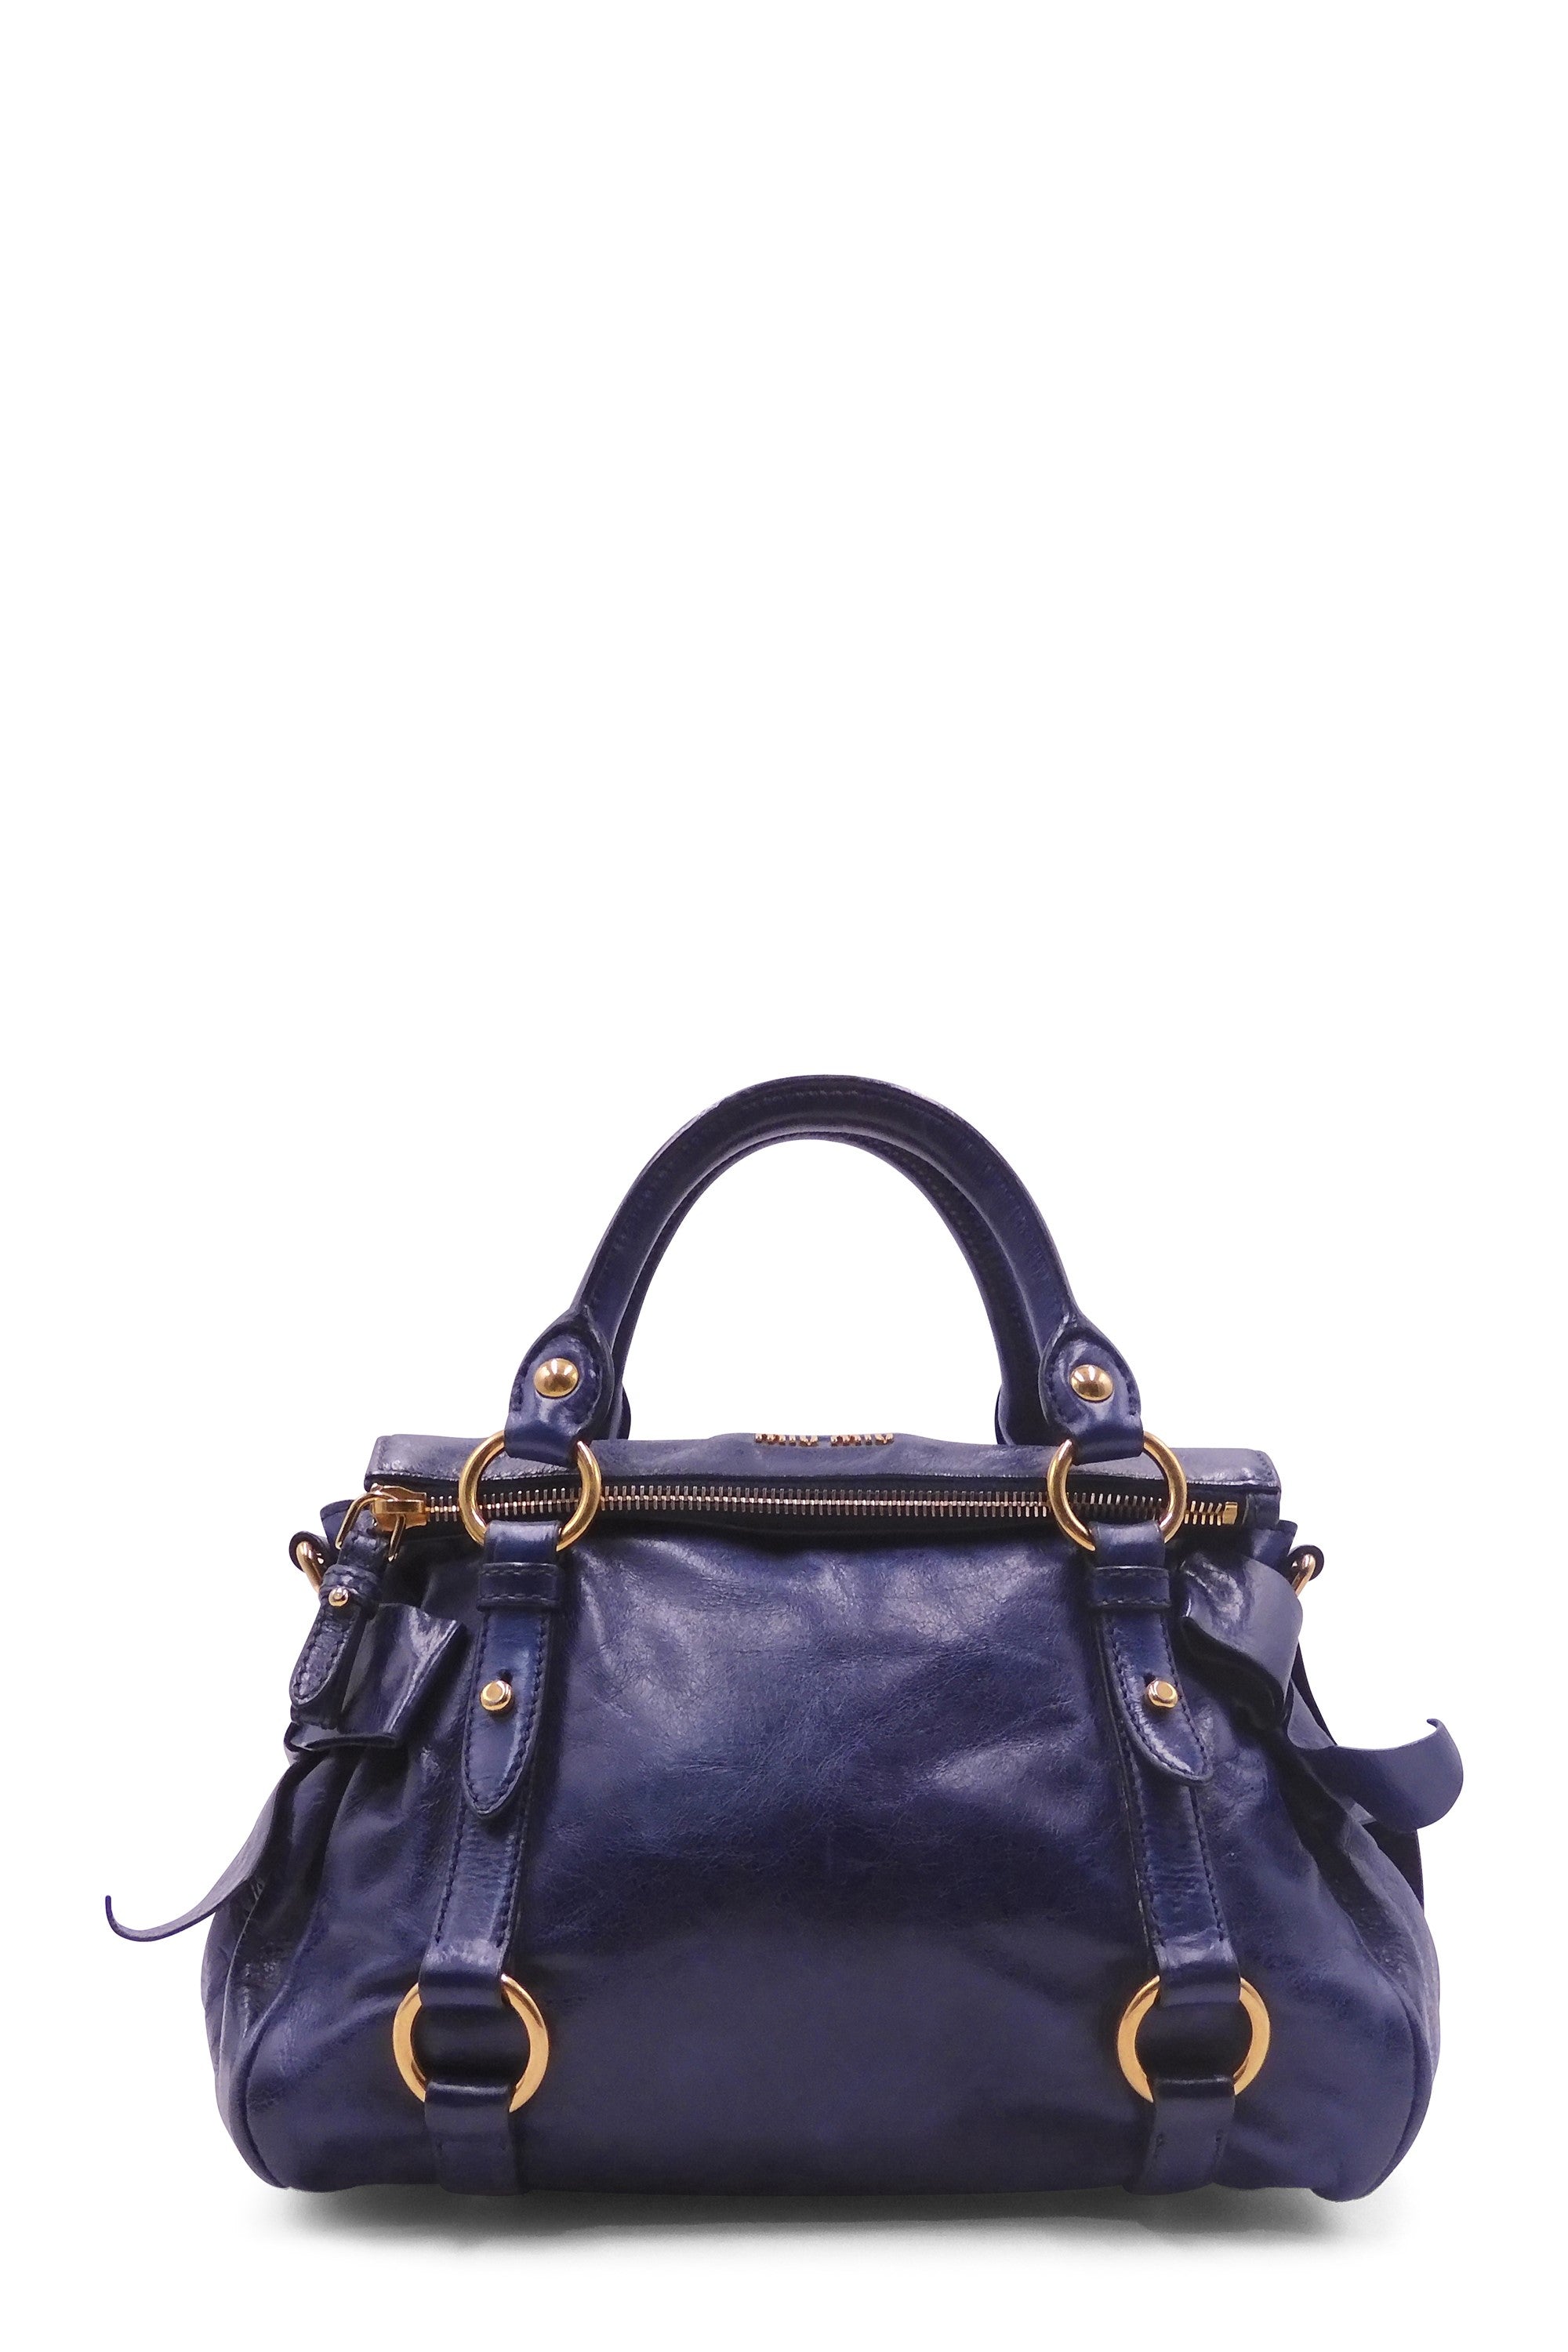 MIU MIU Vitello Lux Mini Bow Bag Nero Black 95730